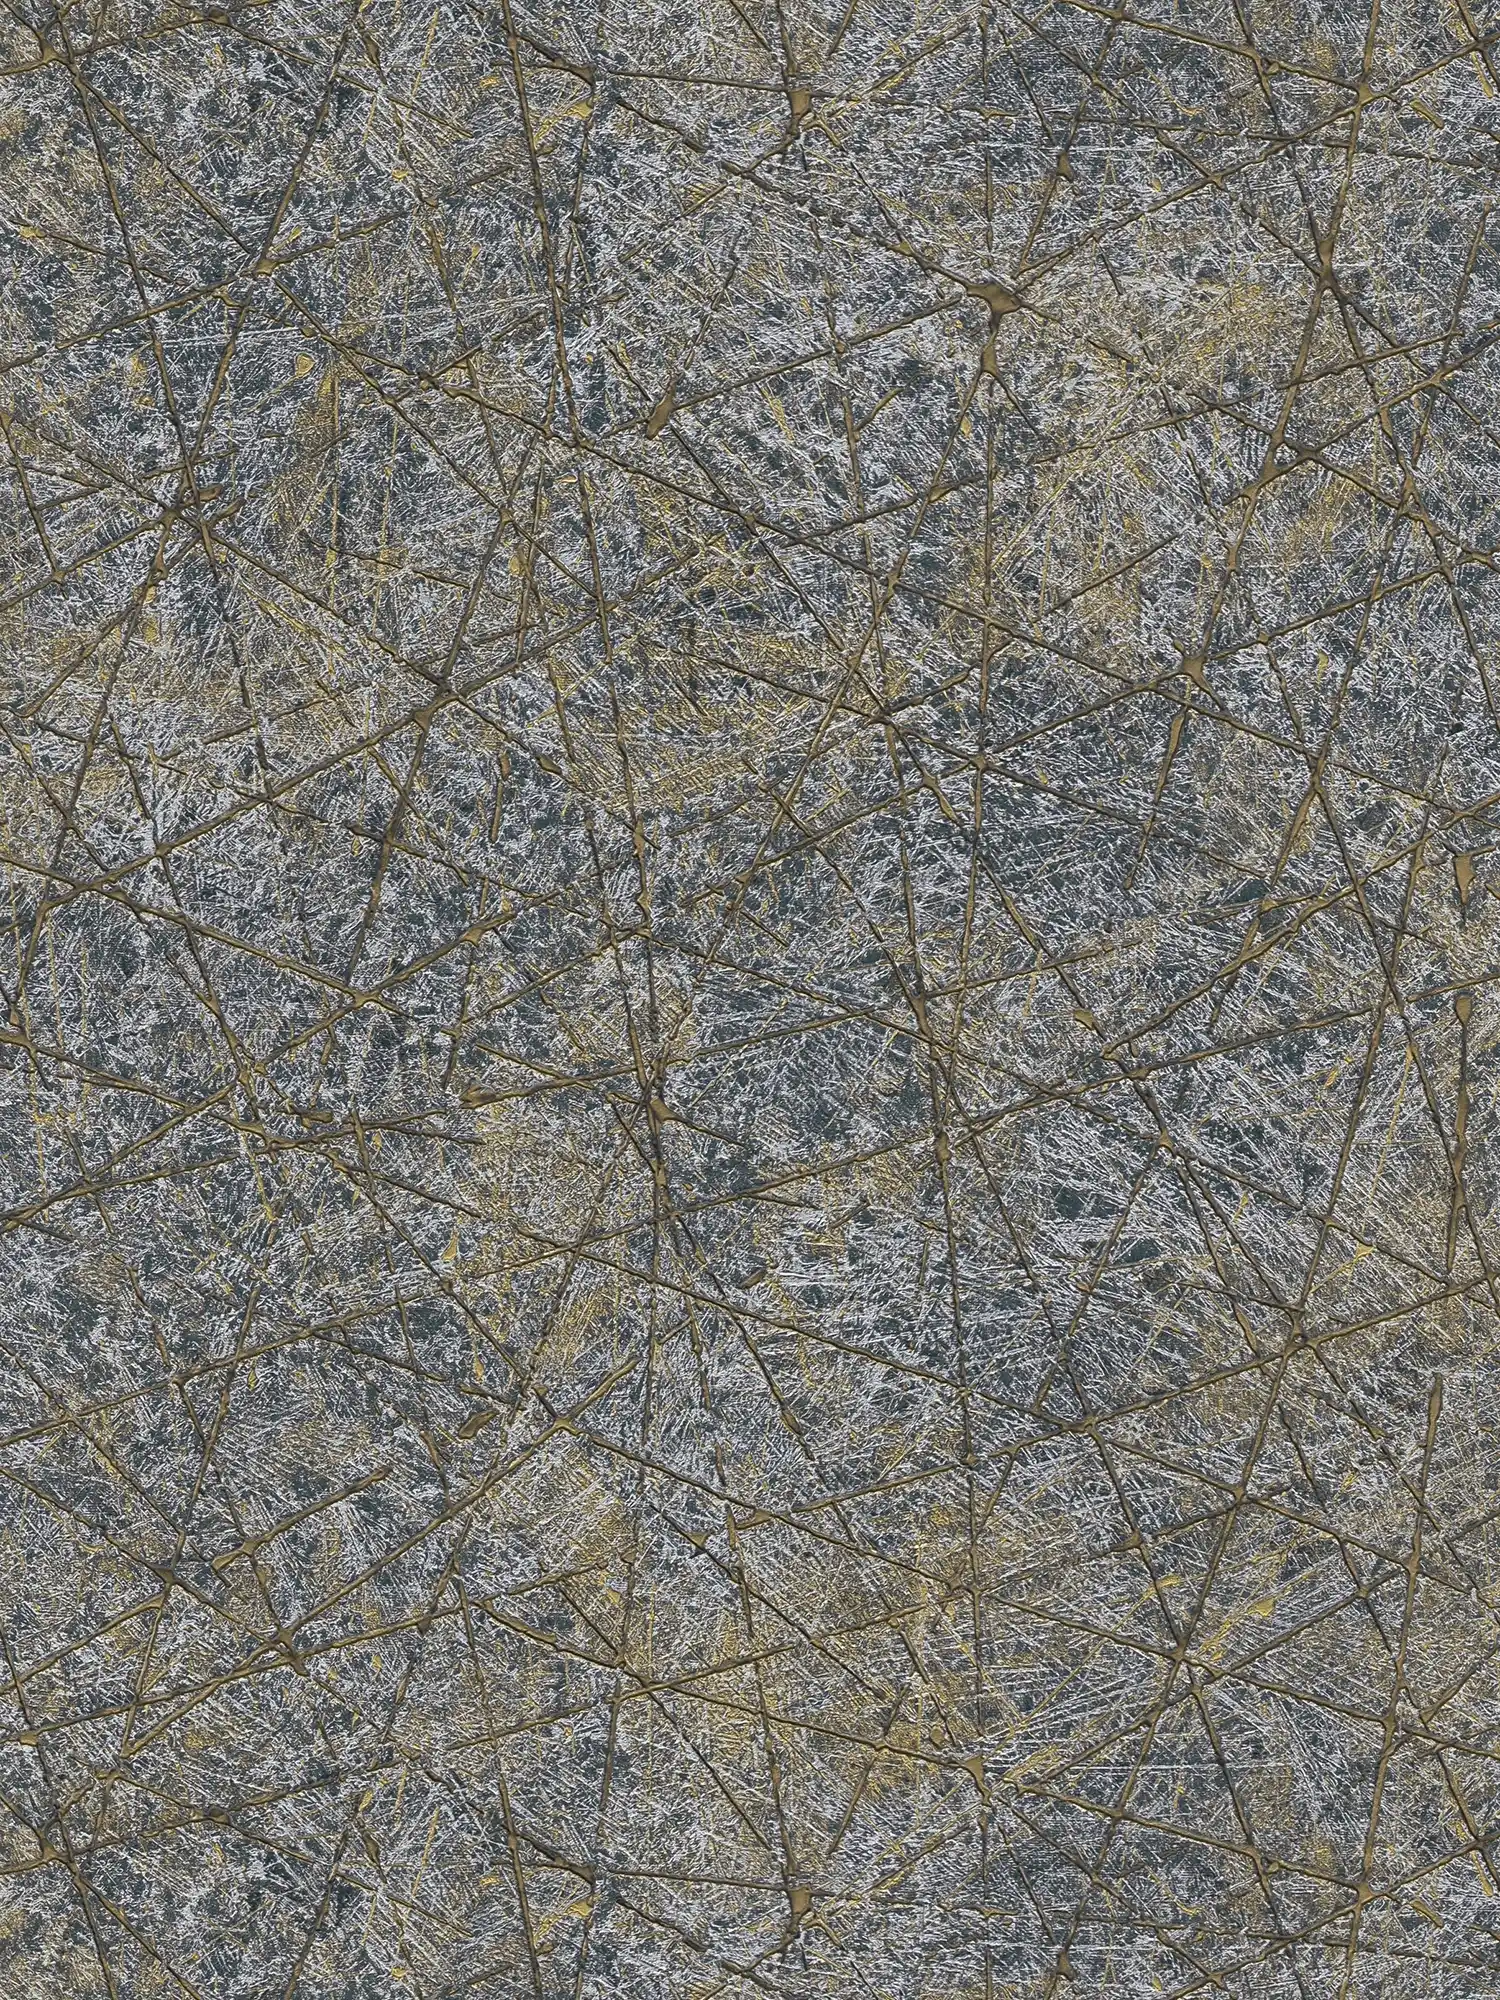         Vliesbehang met abstract grafisch patroon - zwart, goud, zilver
    